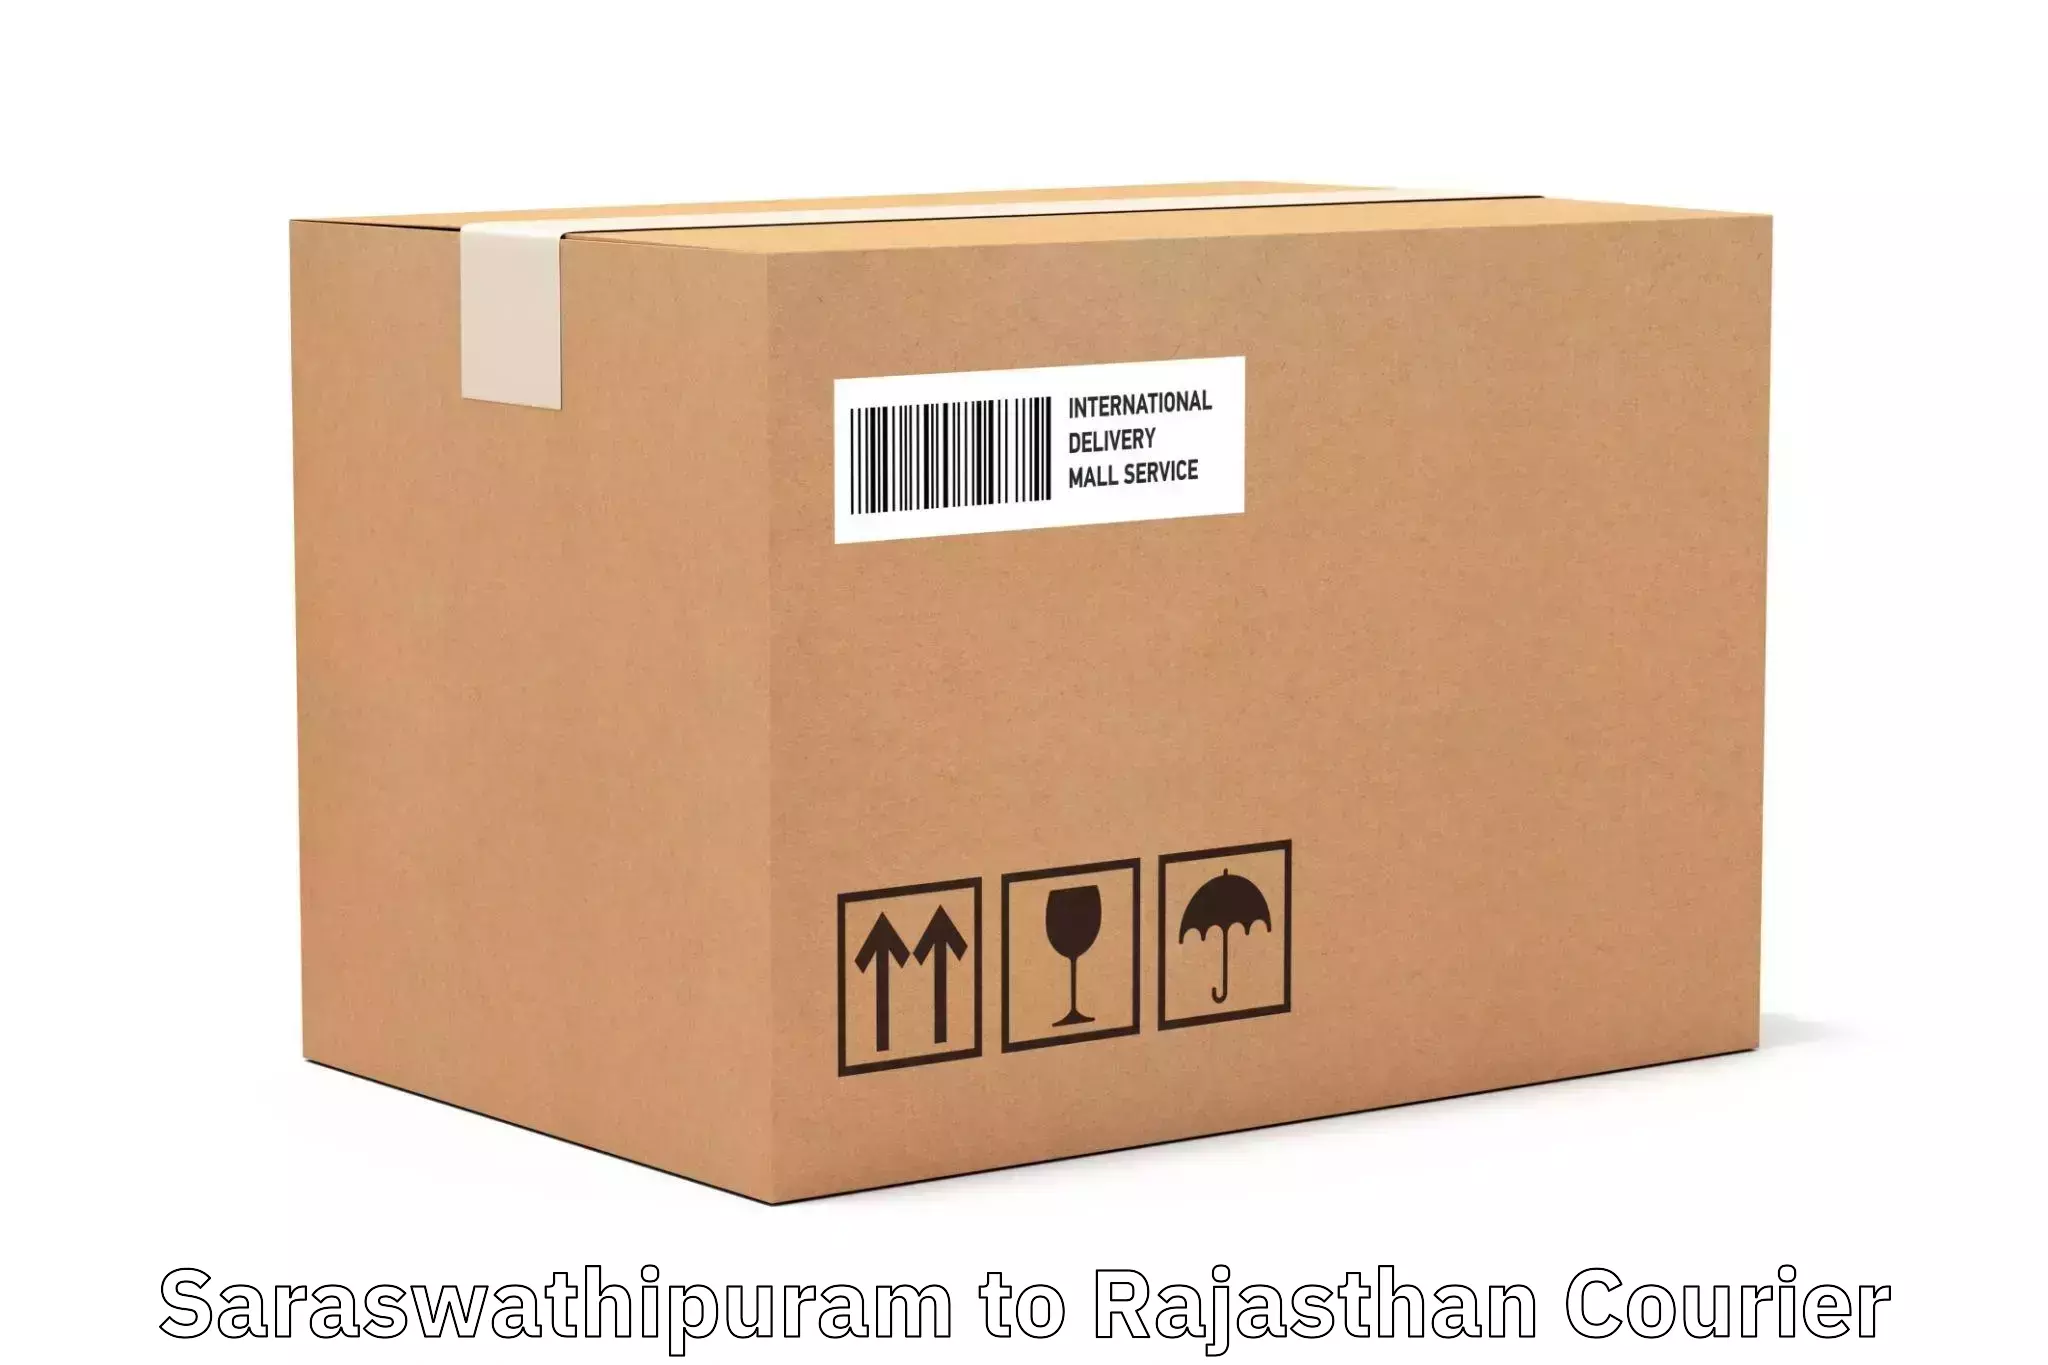 User-friendly courier app Saraswathipuram to Anupgarh